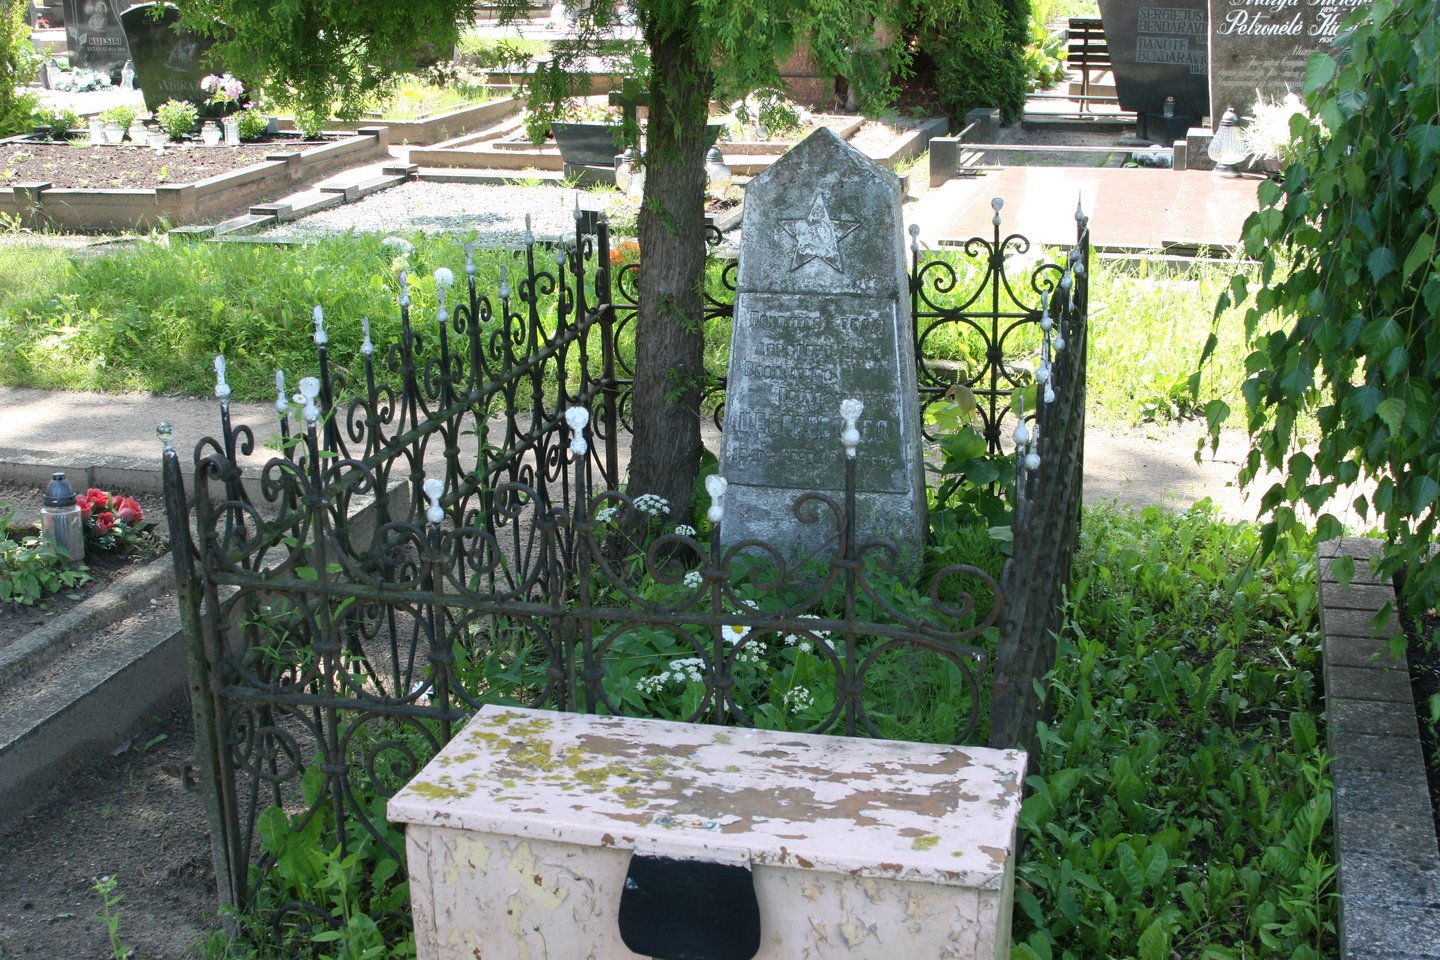  Senosiose miesto kapinėse yra per Antrąjį pasaulinį karą žuvusių sovietų karių kapų, kuriais niekas nebesirūpina.<br> L.Juodzevičienės nuotr.